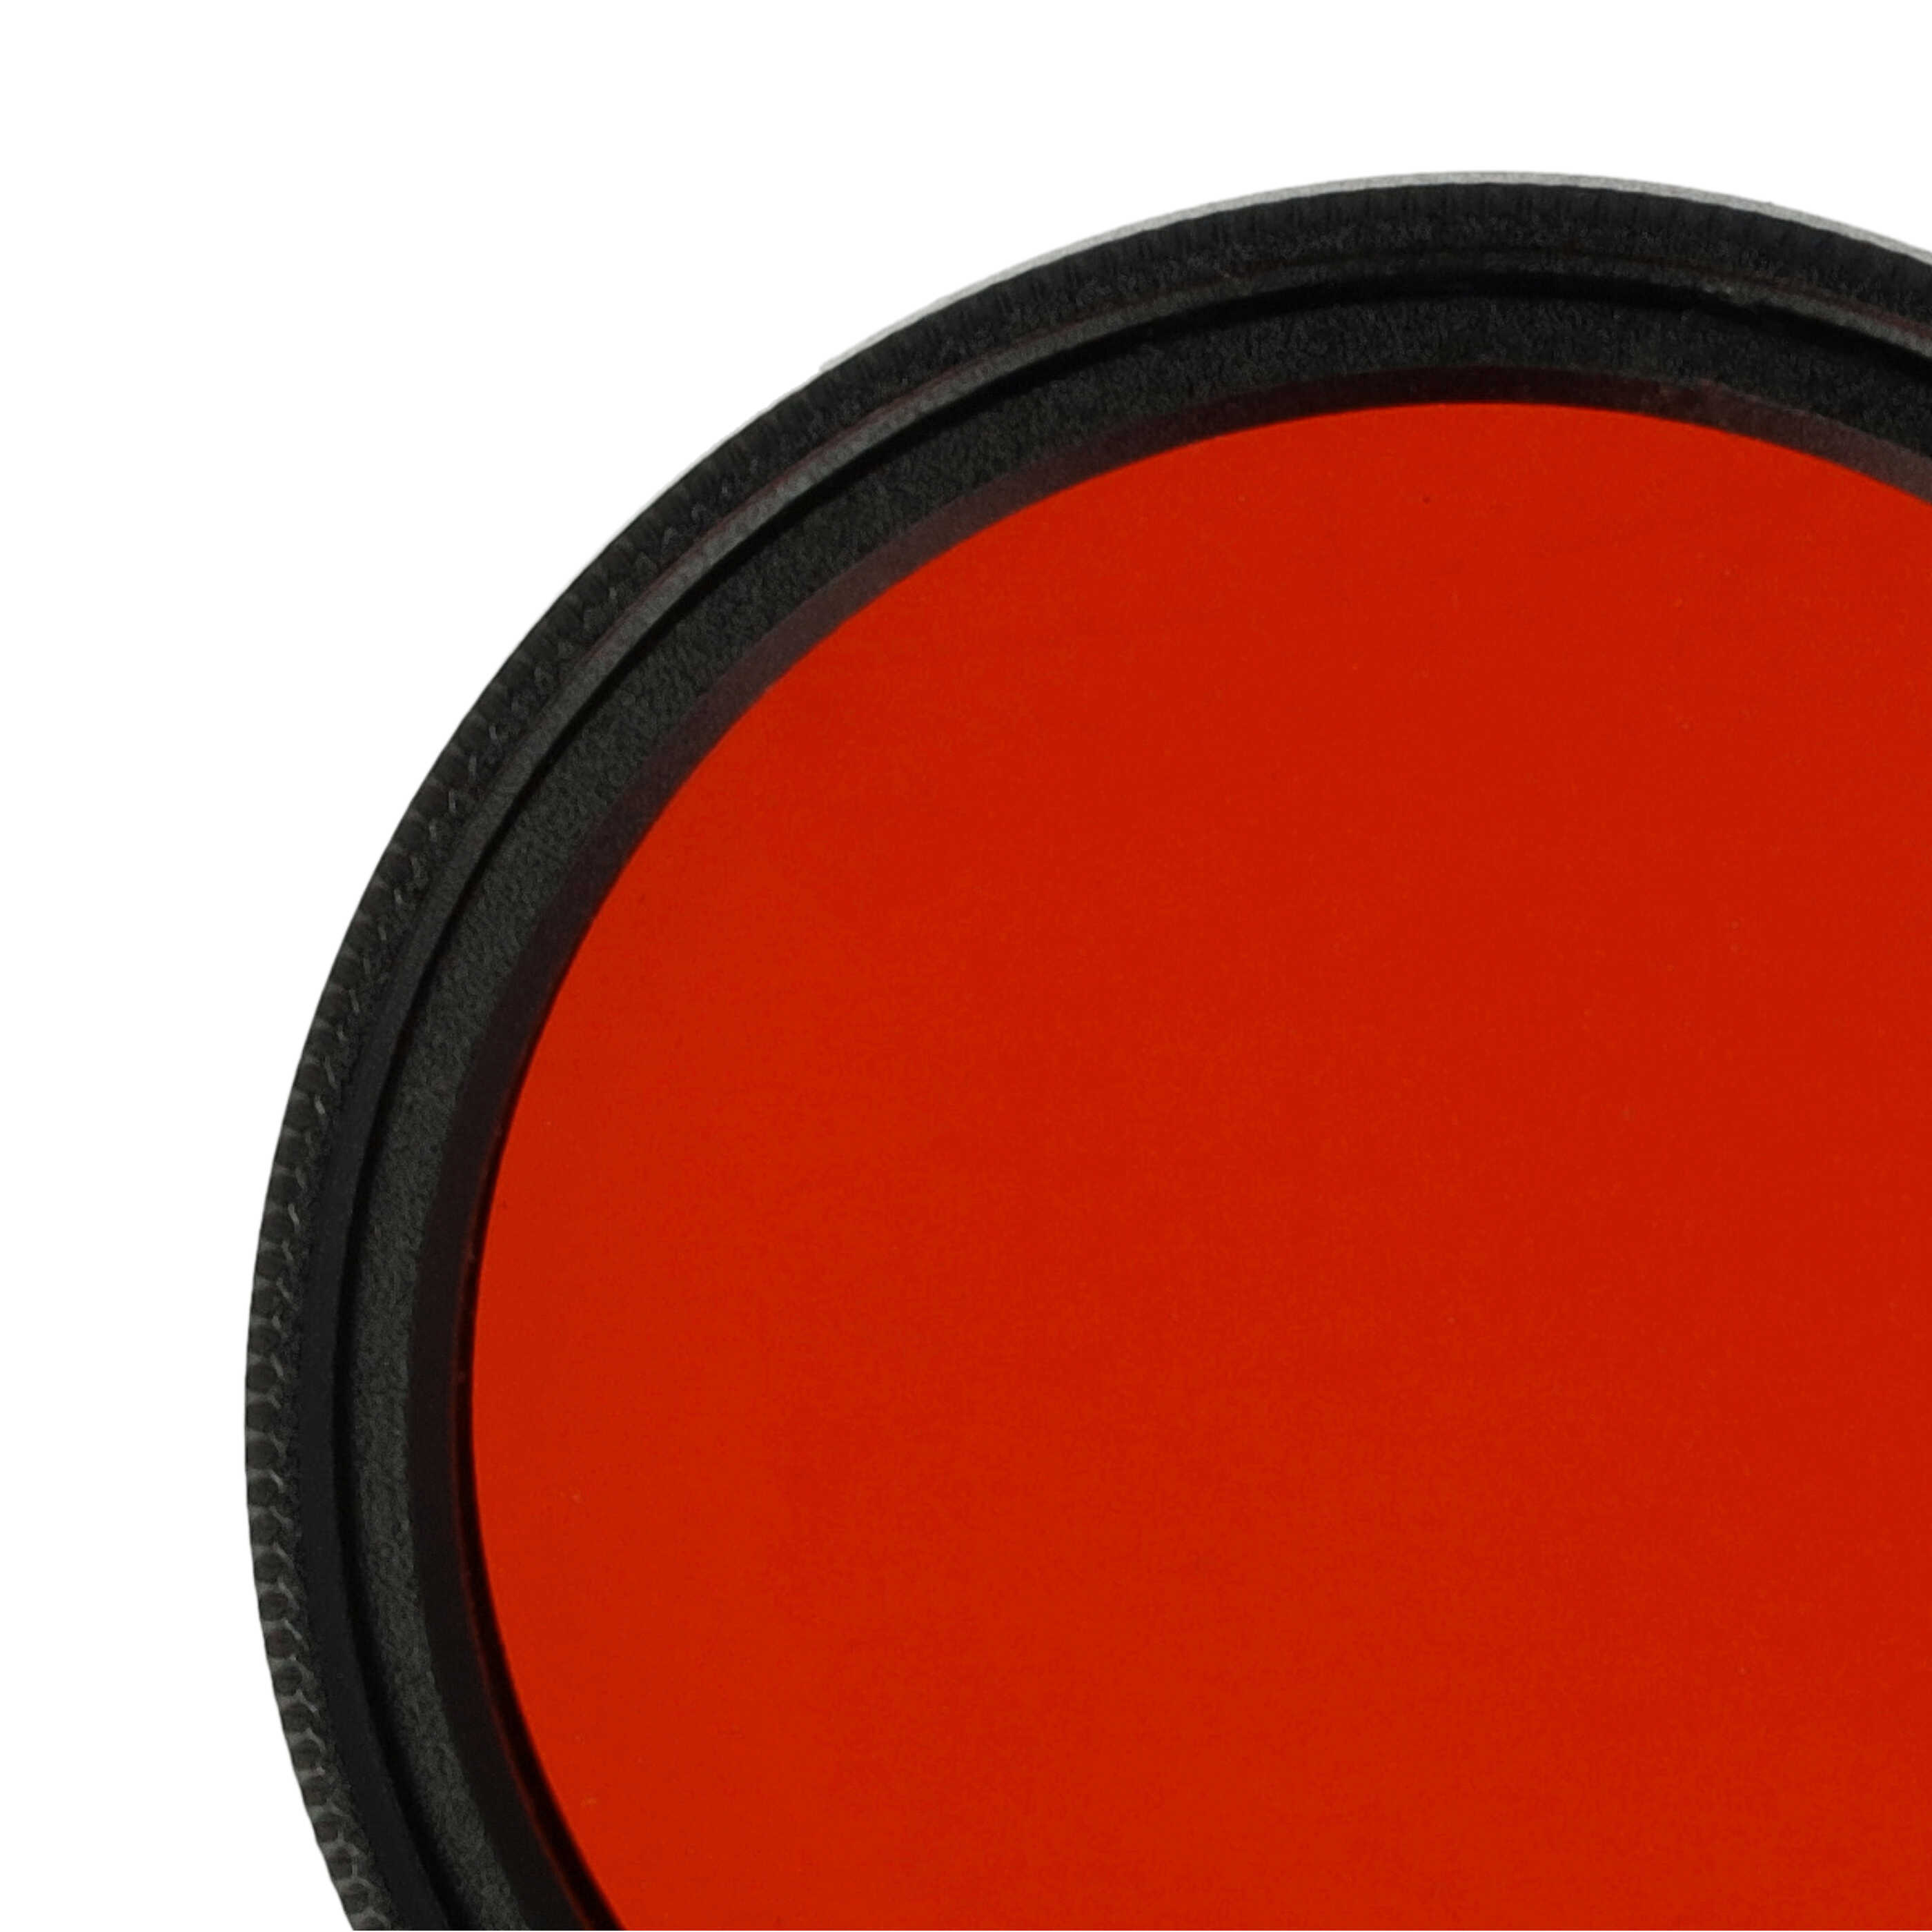 Filtr fotograficzny na obiektywy z gwintem 37 mm - filtr pomarańczowy